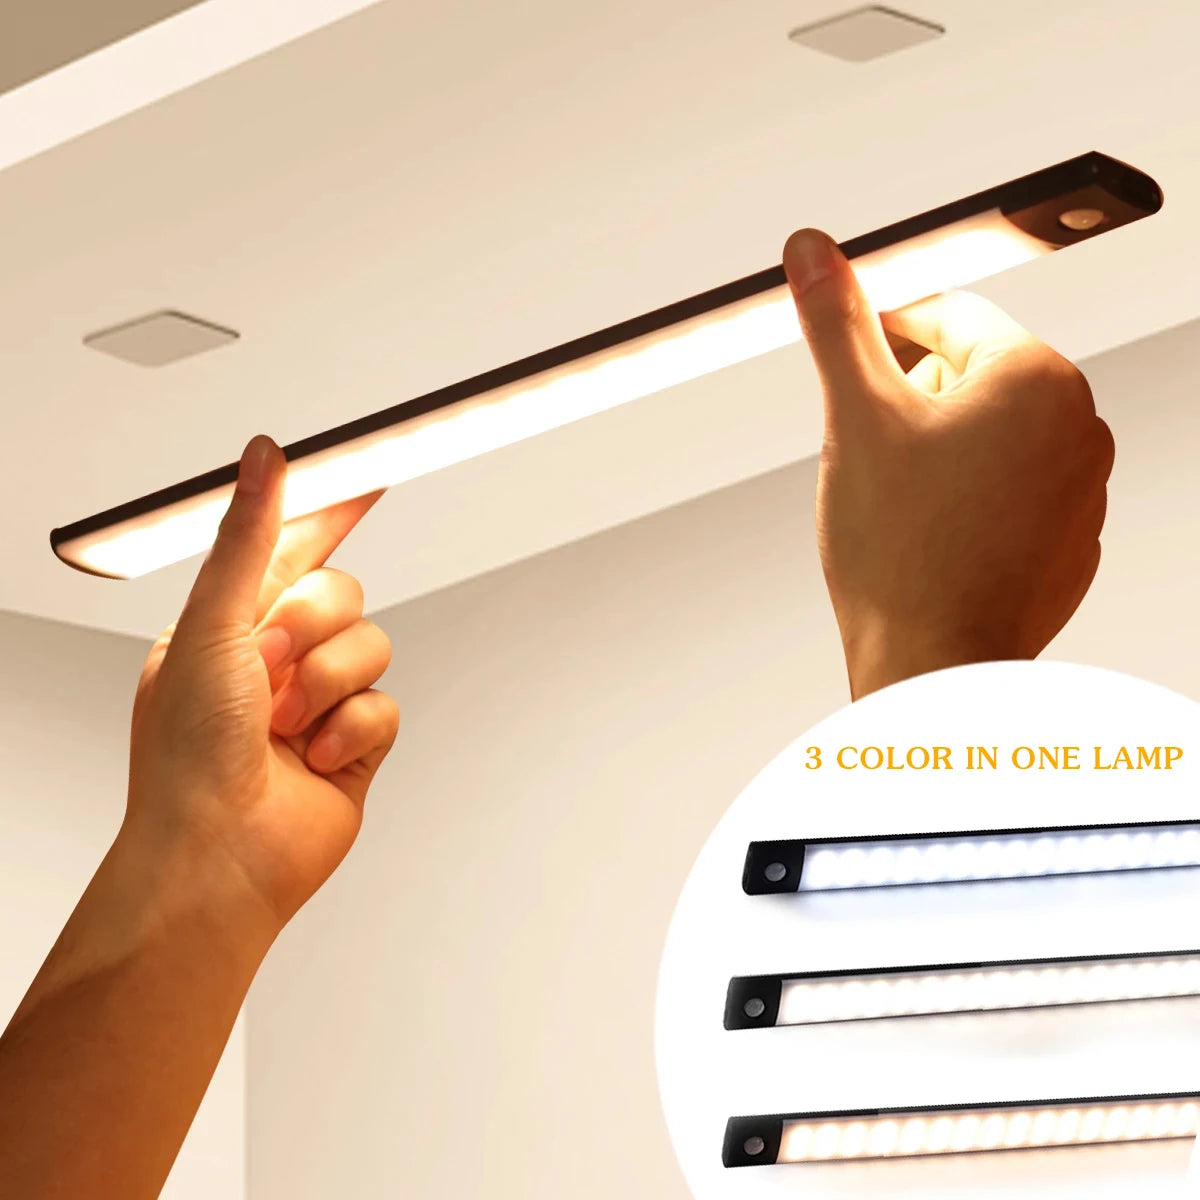 LED Motion Sensor Light - shopssence